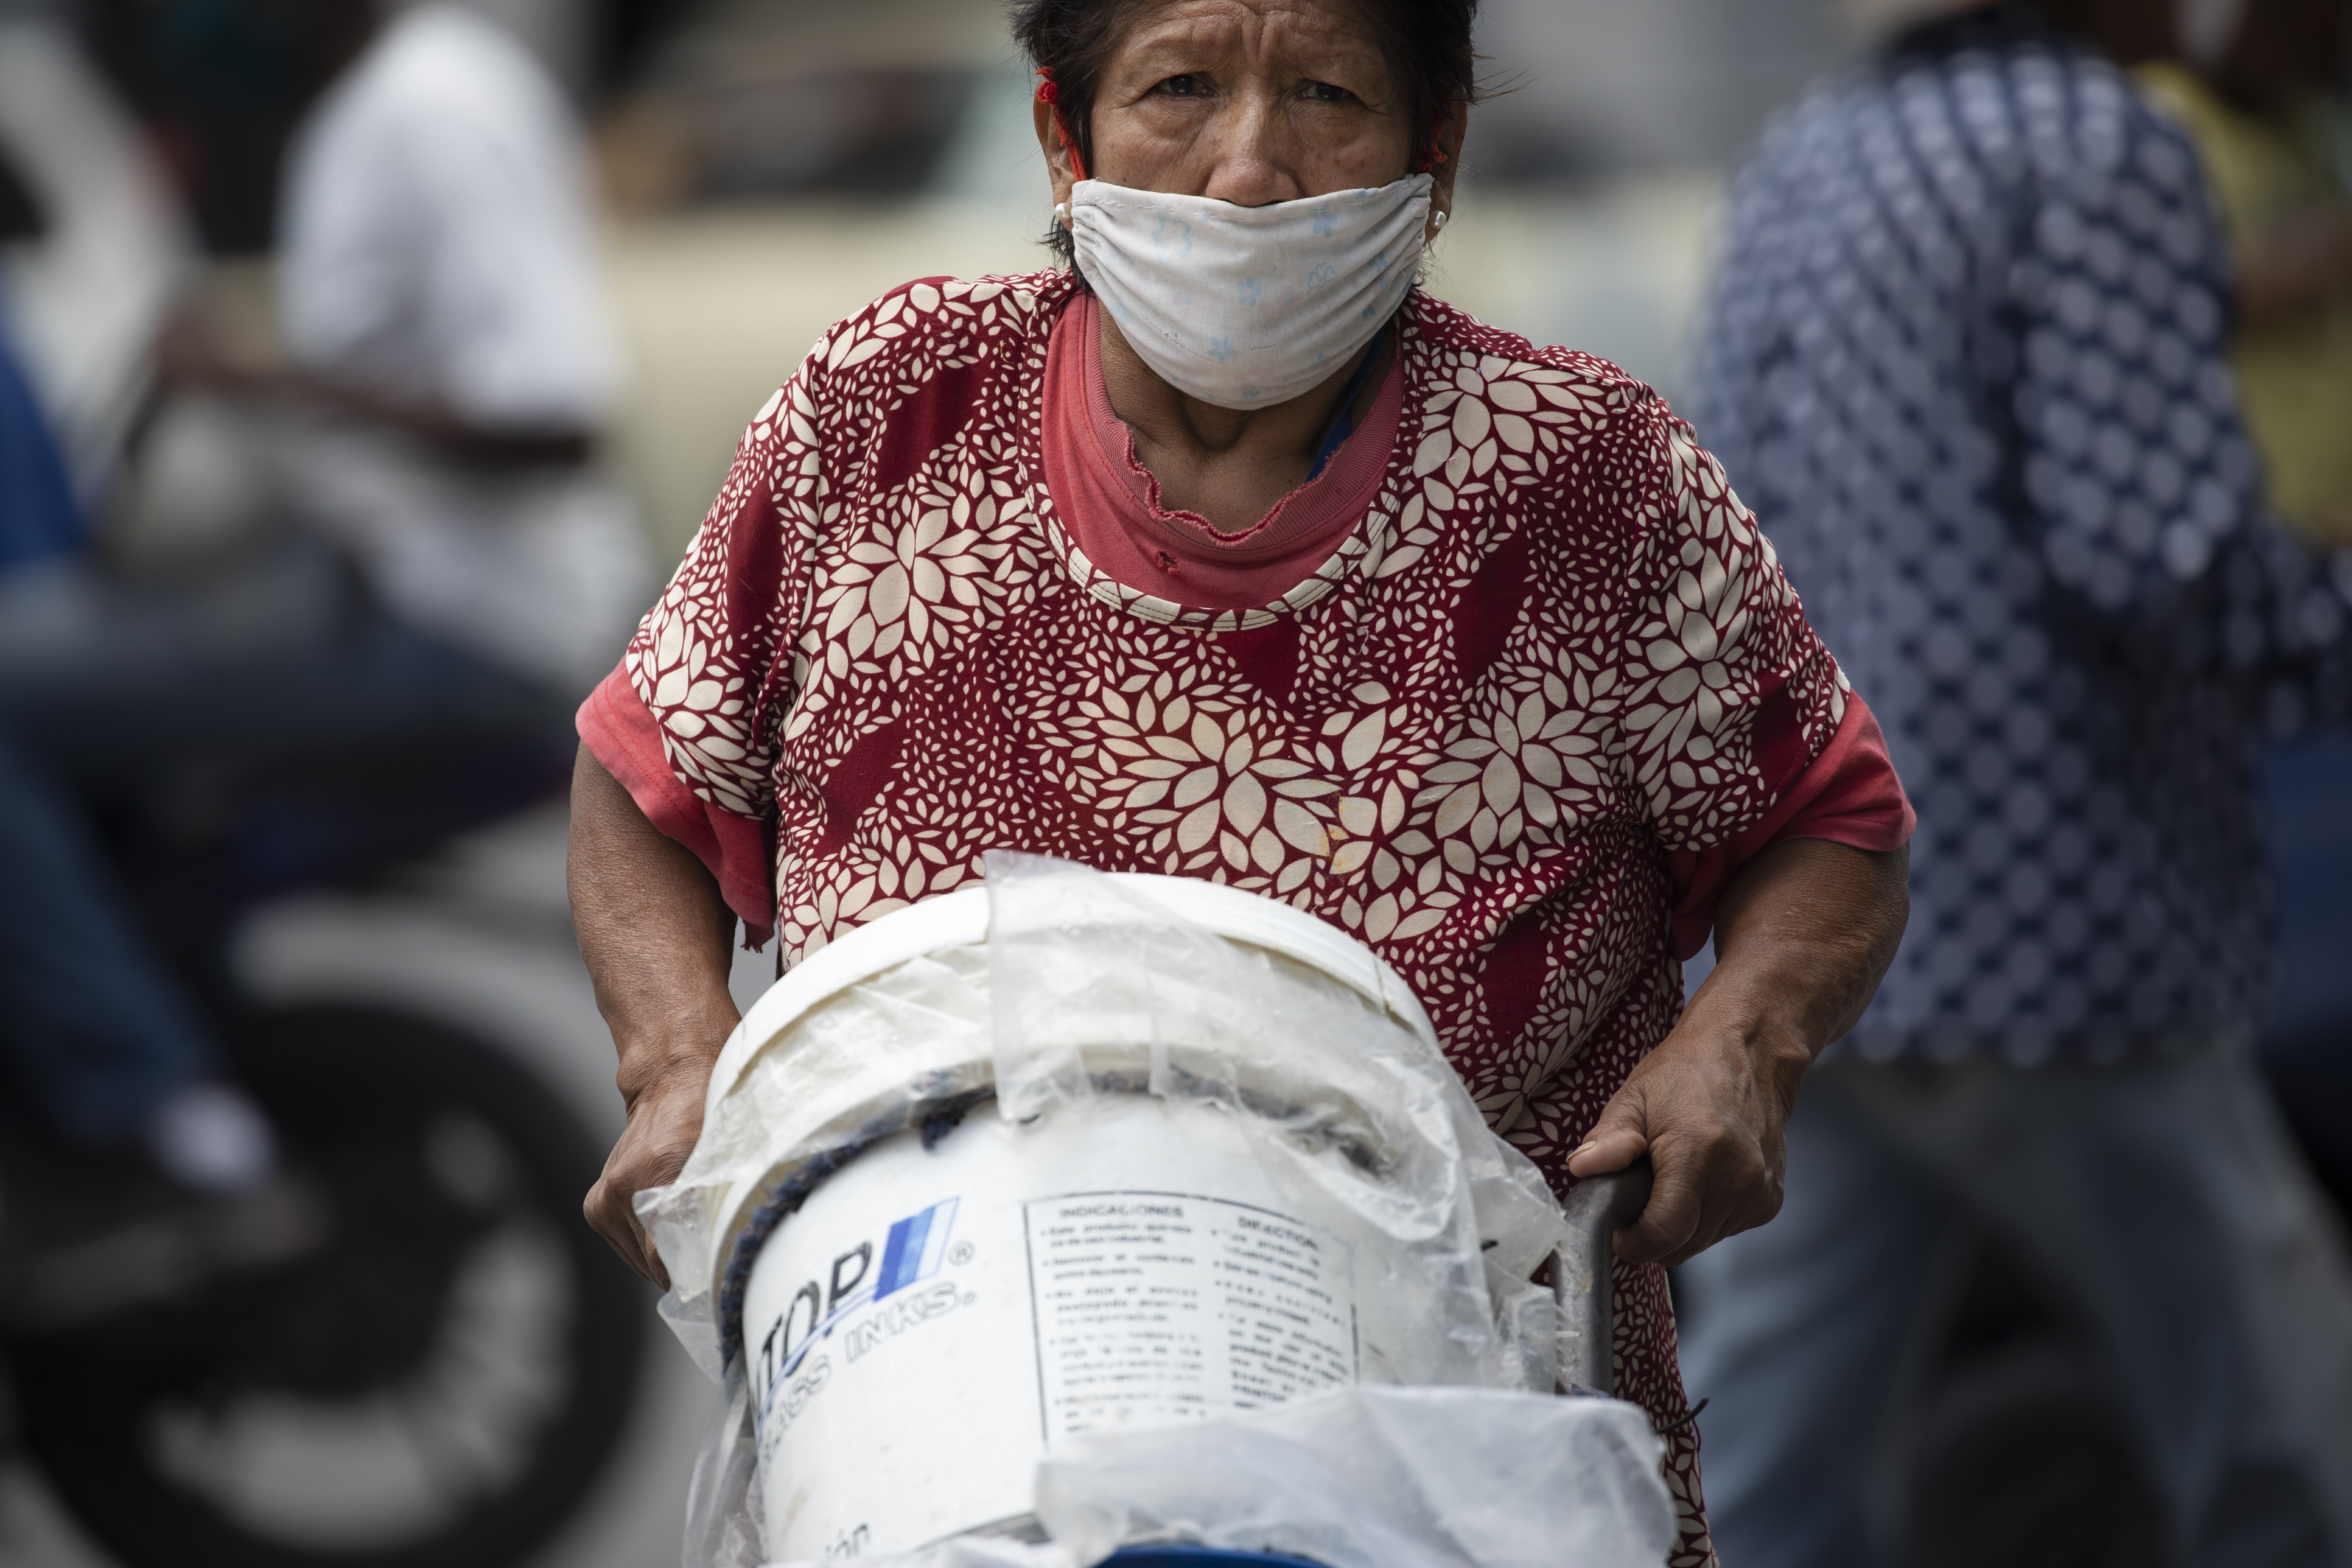 Una mujer, con mascarilla para protegerse del coronavirus, empuja un carrito con recipientes llenos de agua, en Caracas, Venezuela, el 20 de junio de 2020. Se estima que el 86% de los venezolanos reportó problemas con el suministro de agua, incluyendo un 11% que no tiene, según una encuesta realizada por la ONG Observatorio Venezolano de Servicios Públicos entre 4.500 residentes en abril. (AP Foto/Ariana Cubillos)